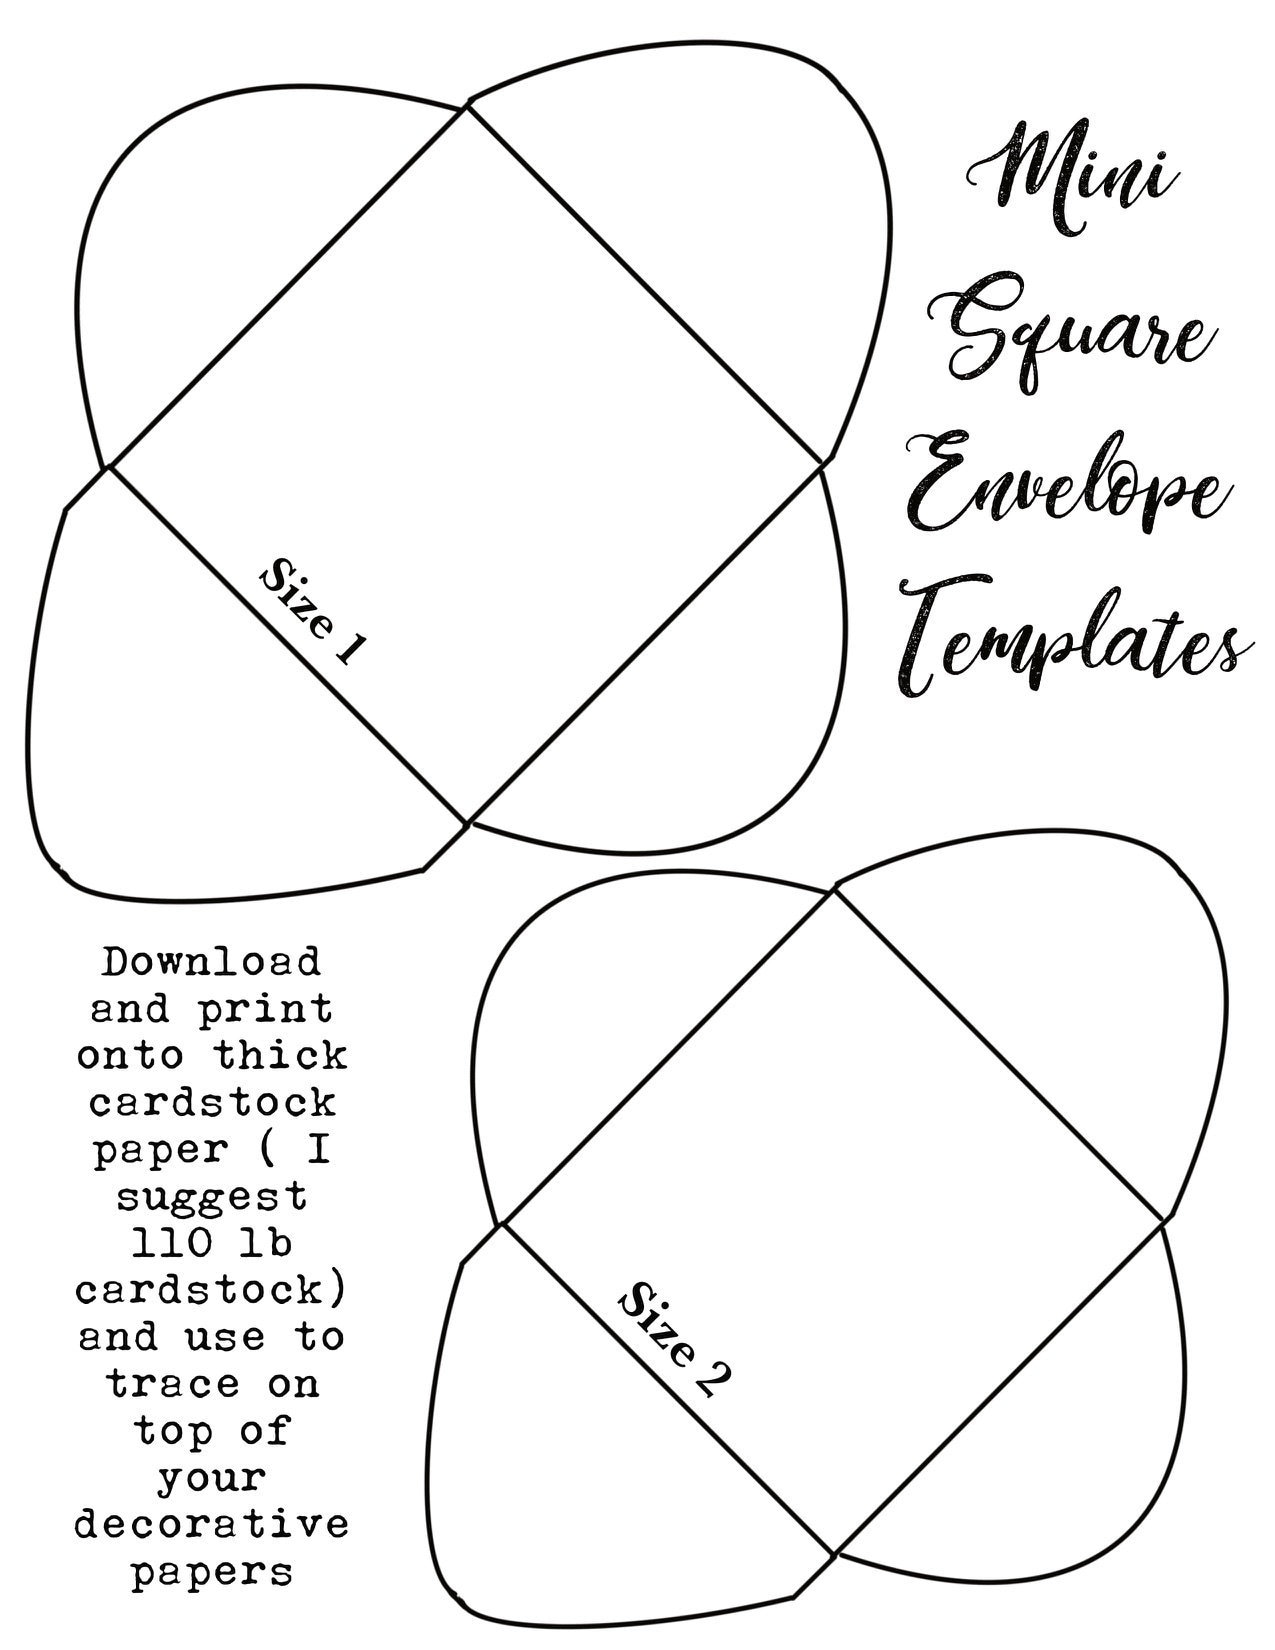 mini-square-envelope-template-etsy